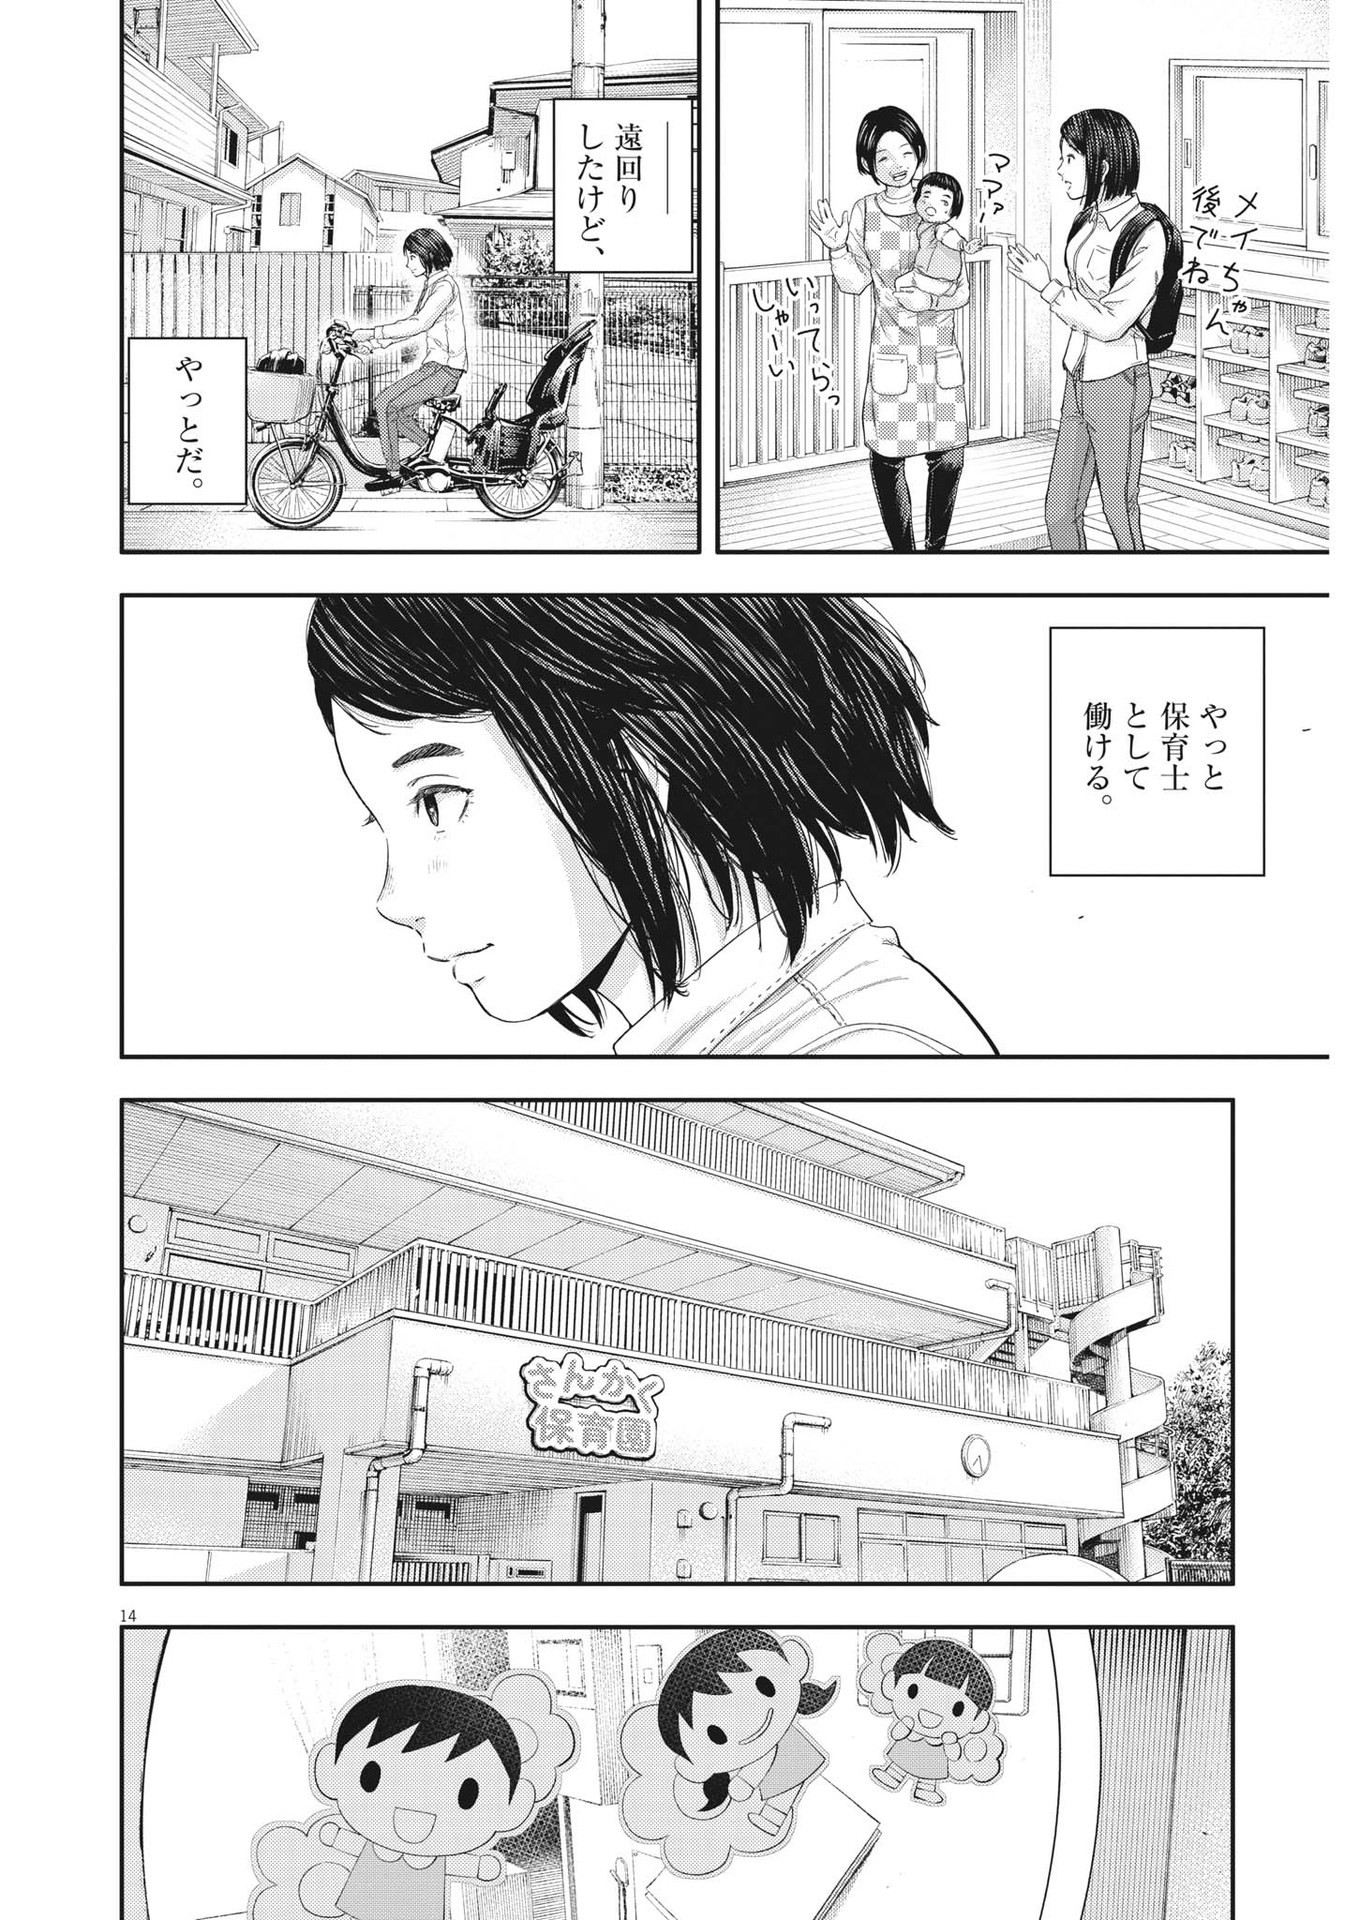 Yumenashi-sensei no Shinroshidou - Chapter 21 - Page 14